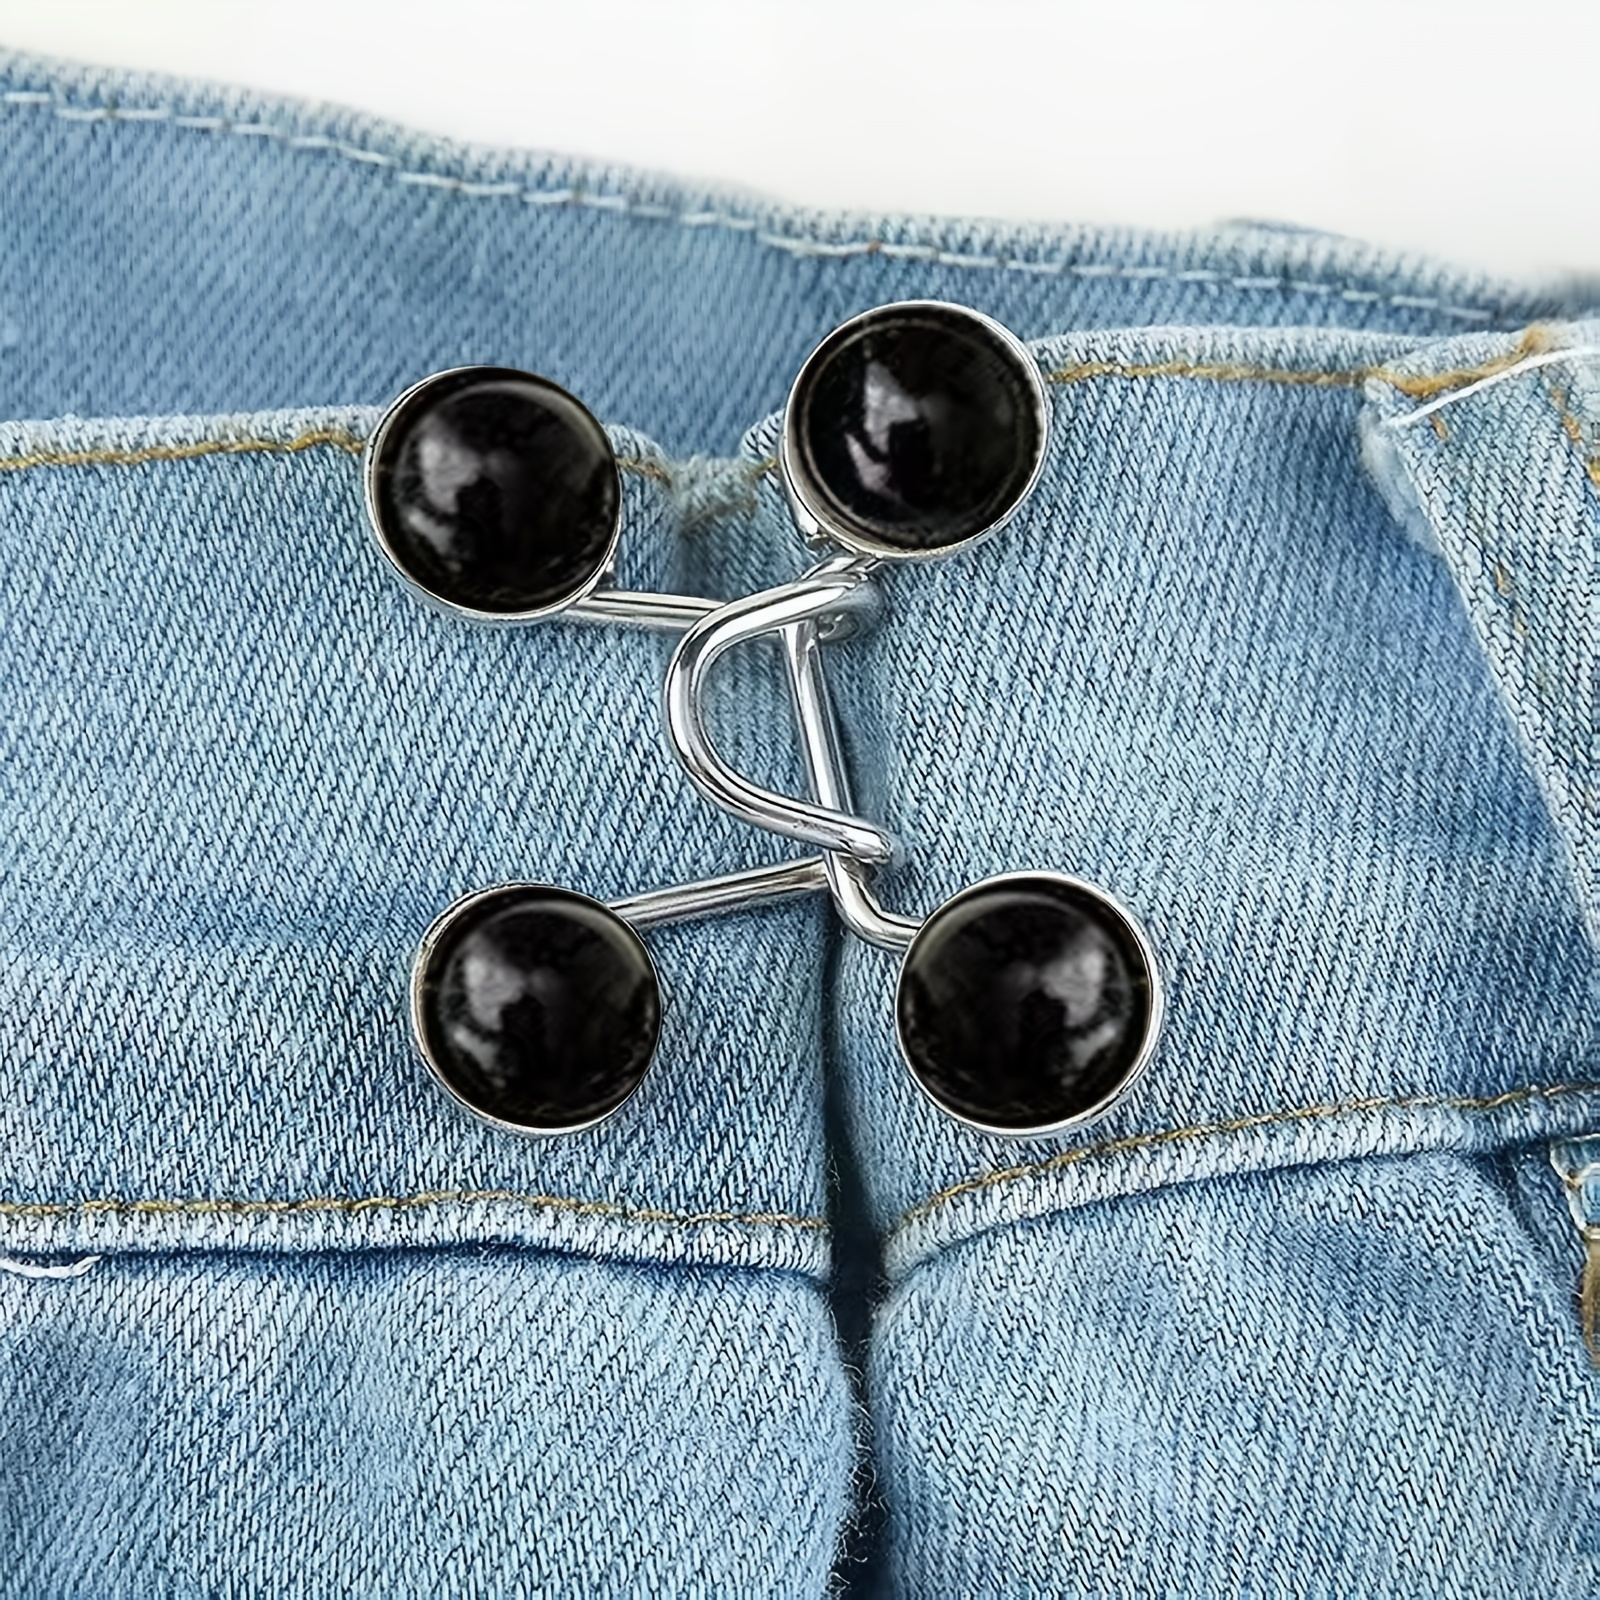 6pcs buttons for jeans jean button loose jeans buttons Elastic Zinc Alloy